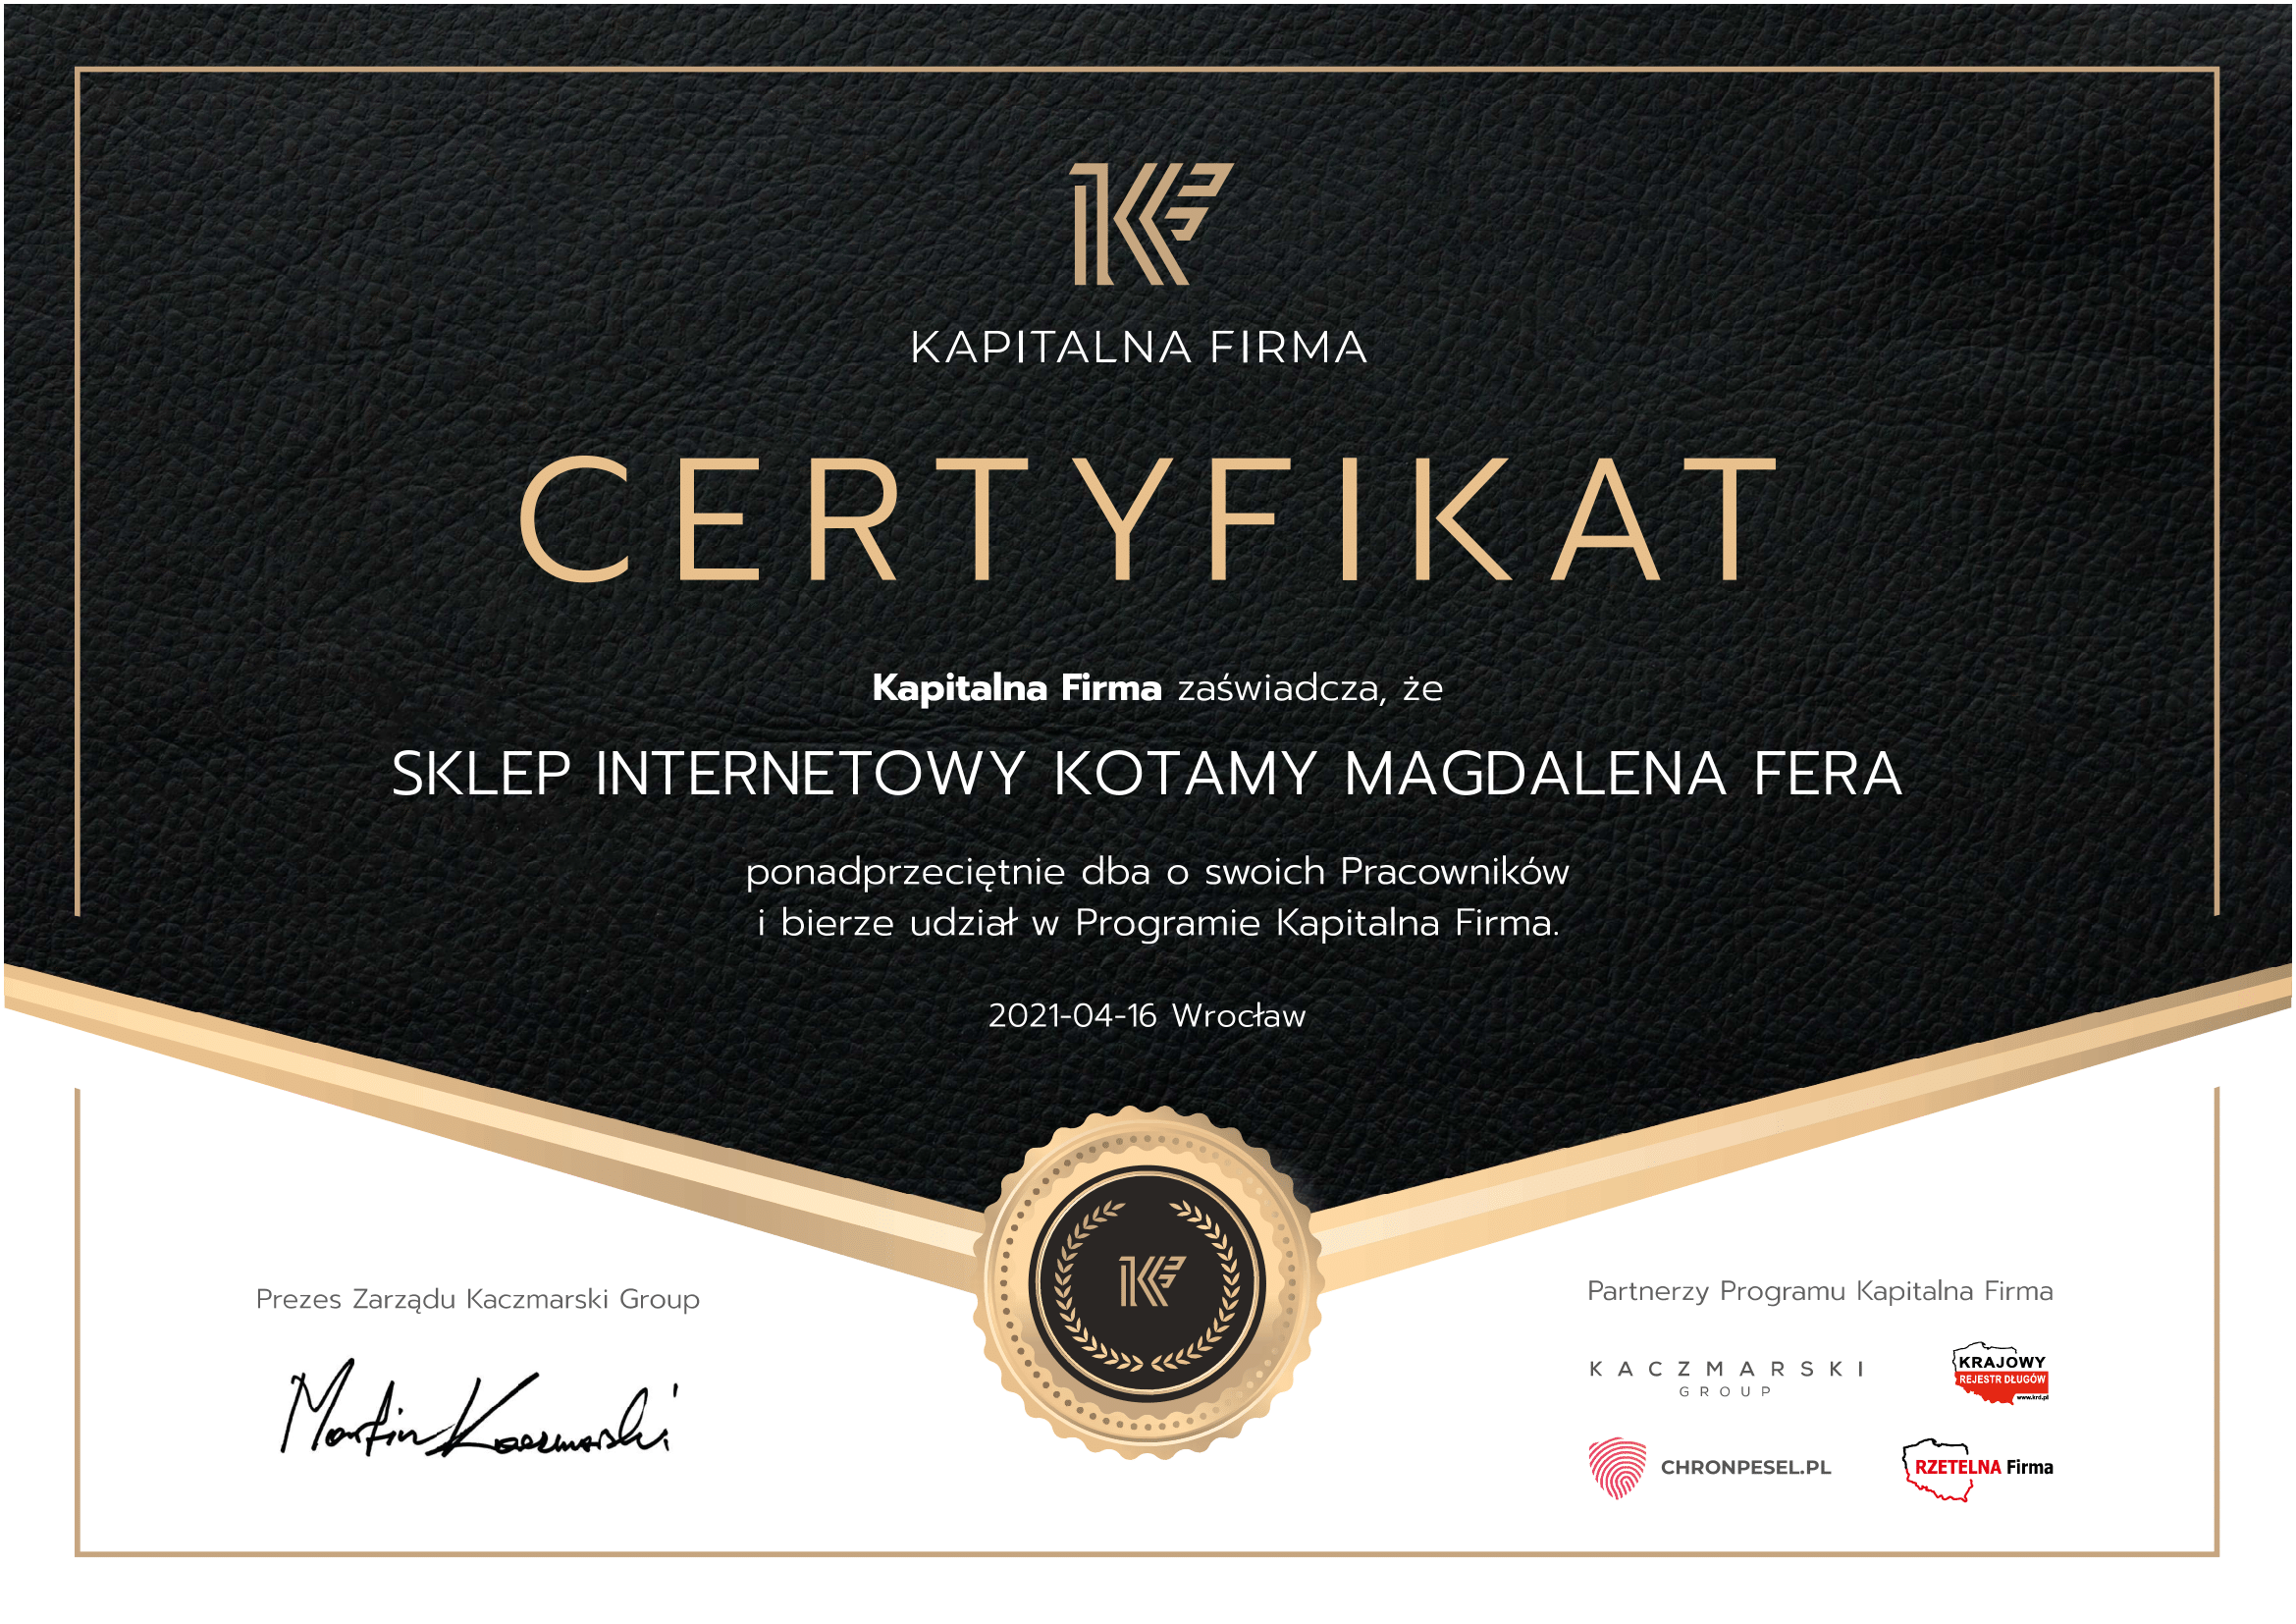 Kapitalma-Firma-Certyfikat-1.png